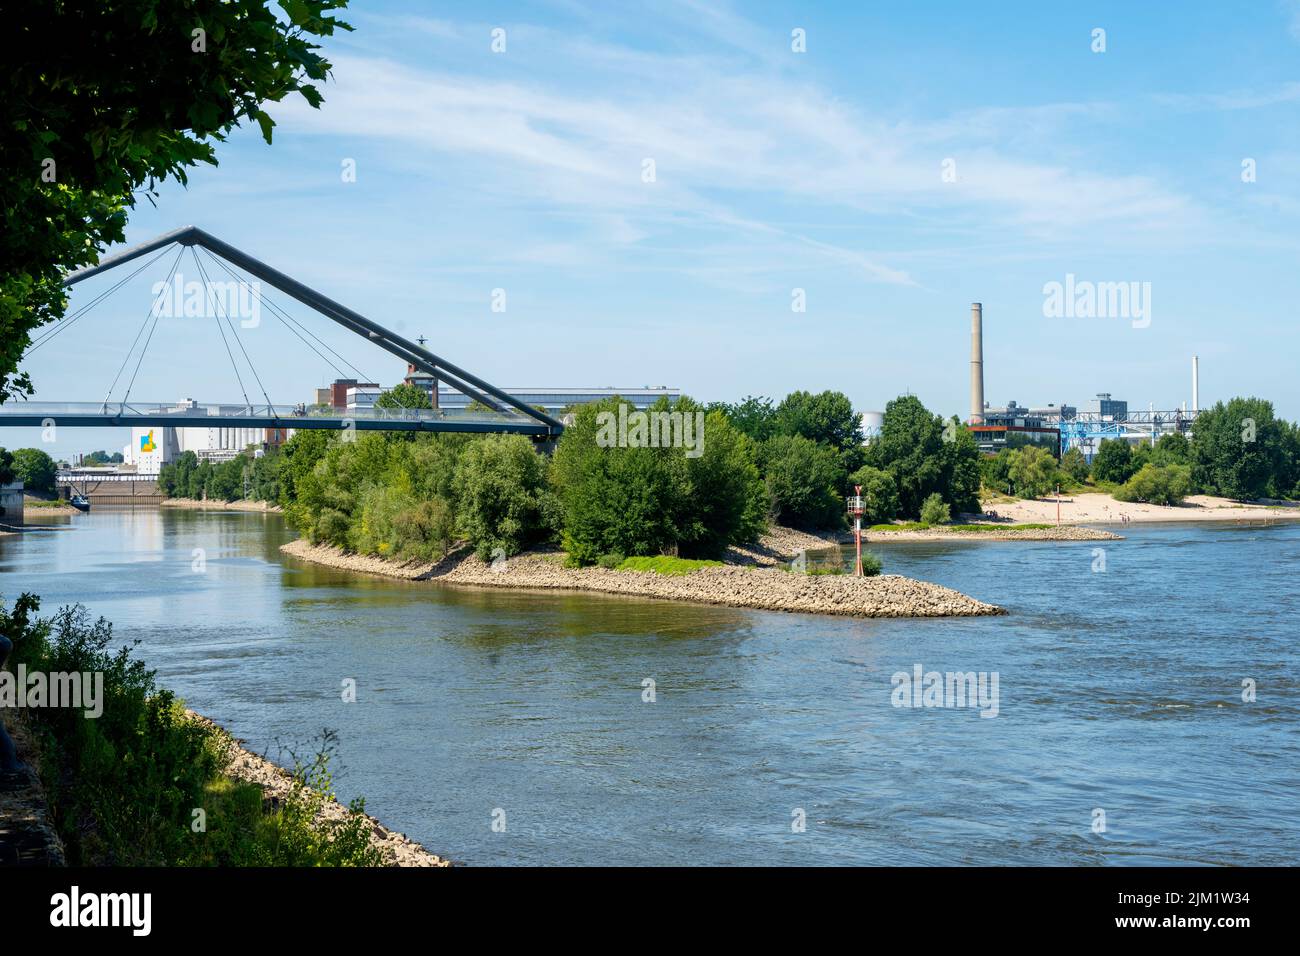 Deutschland, Düsseldorf, Medienhafen, Brücke vom Parlamentsufer zur Aussichtsplattform am Rhein Stock Photo